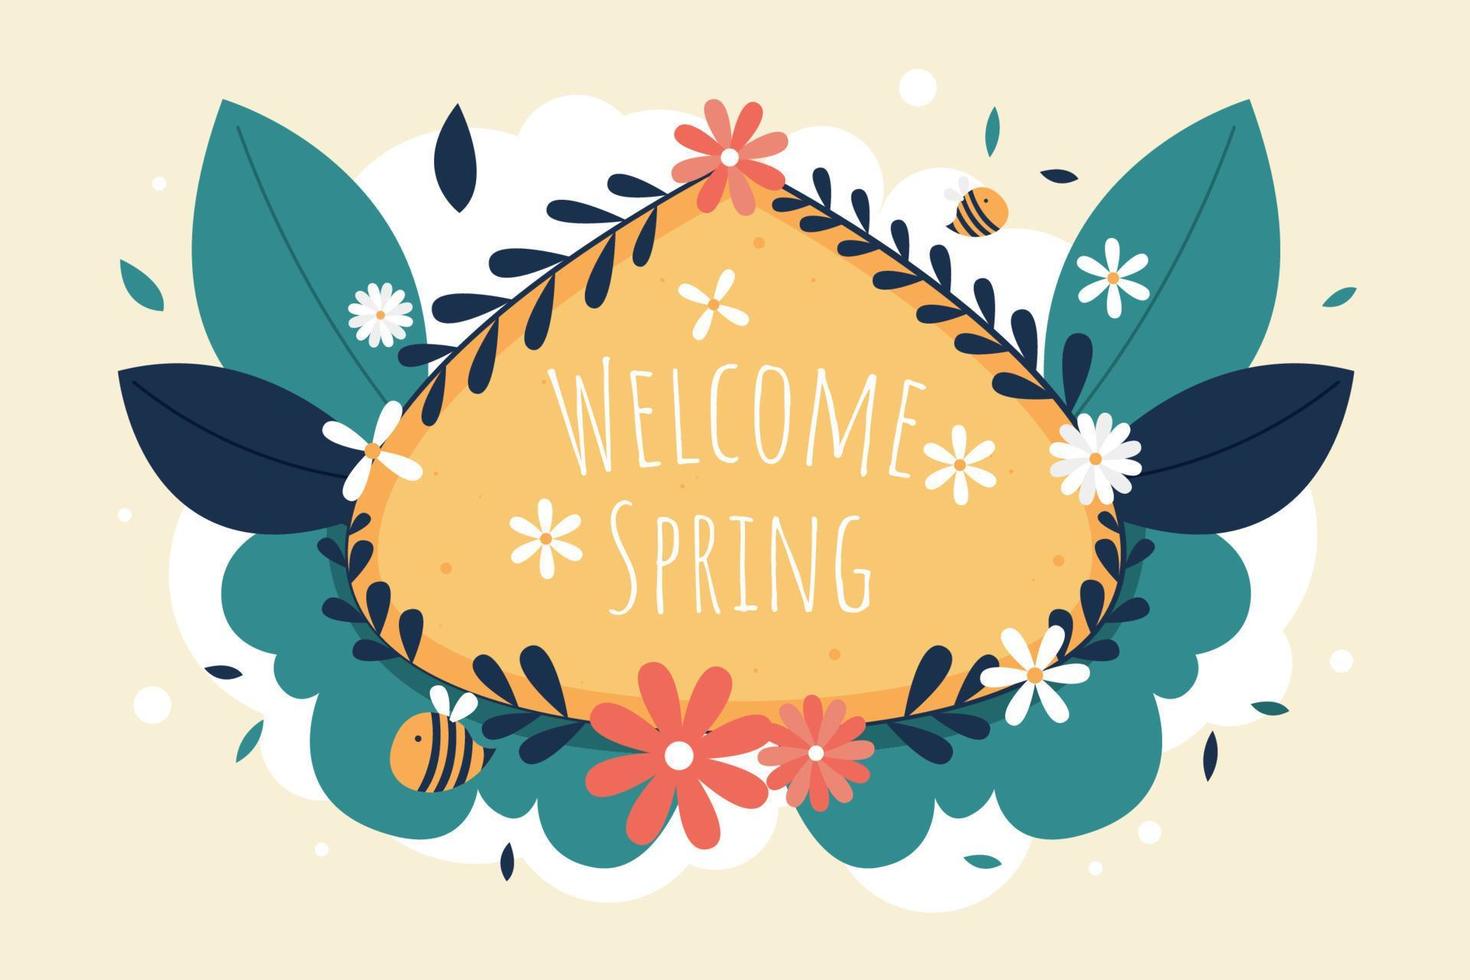 bienvenue le jour du printemps avec illustration plate de fond vecteur